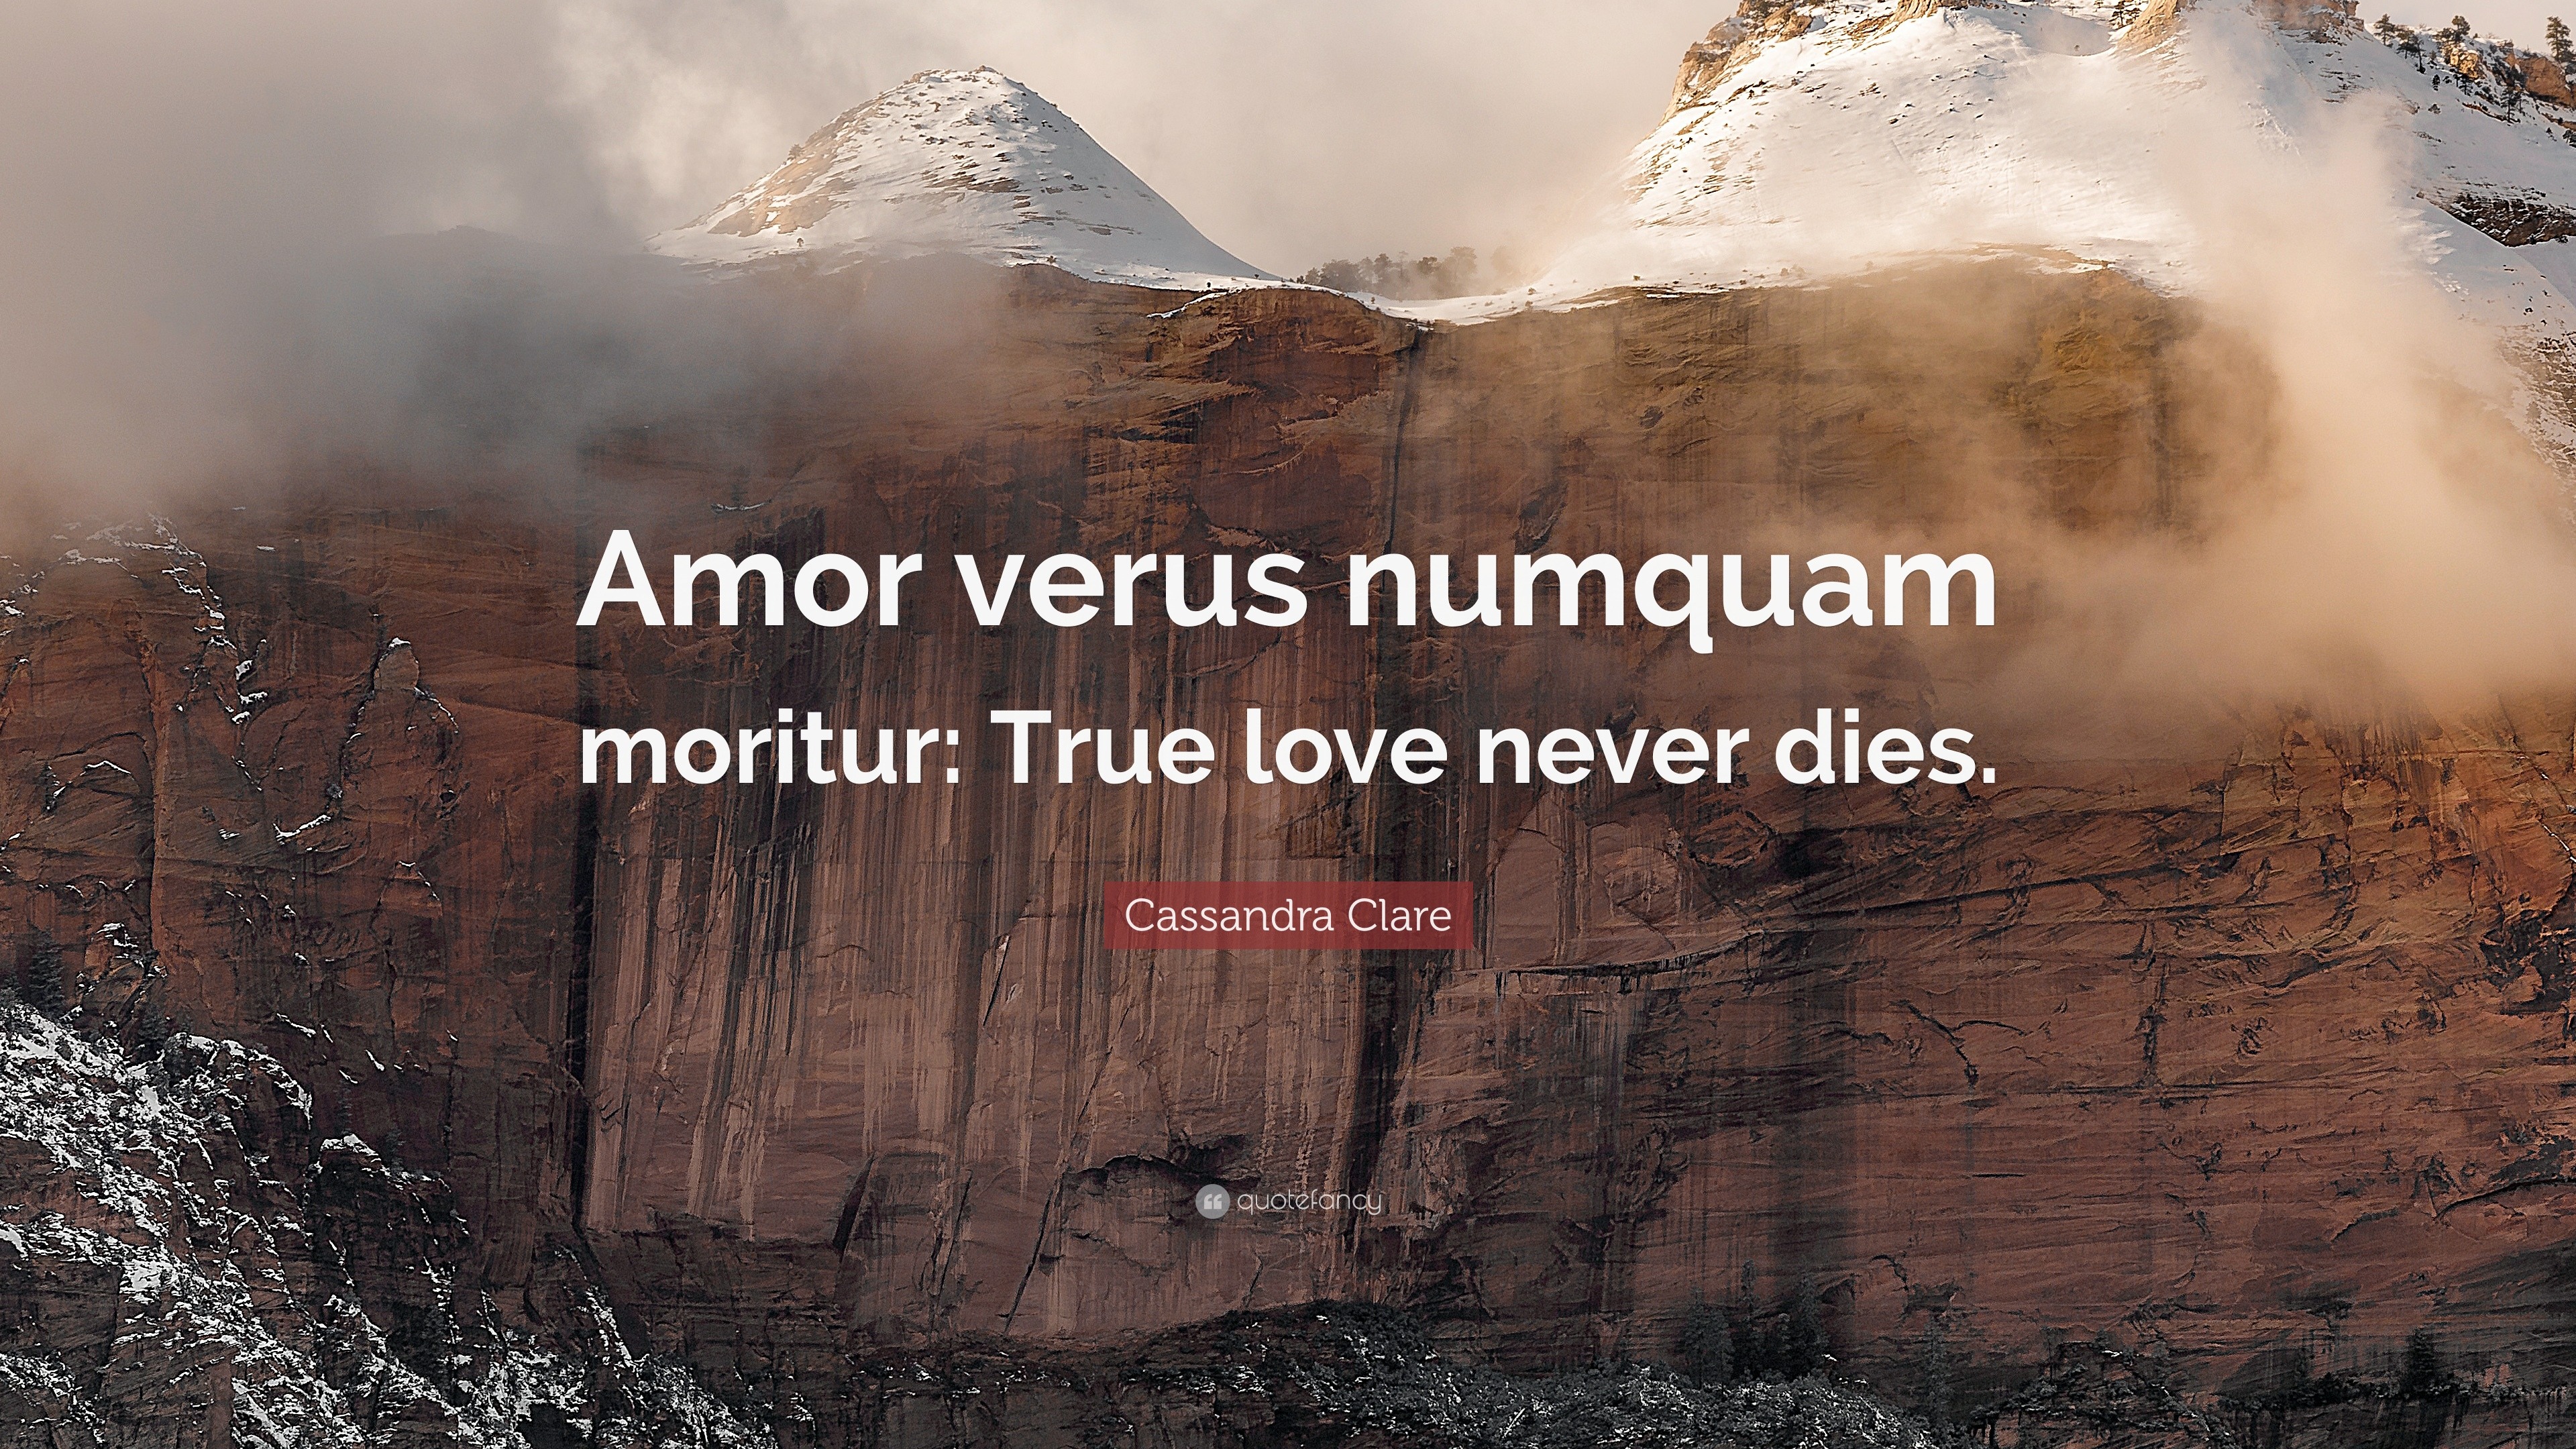 Cassandra Clare Quote “Amor verus numquam moritur True love never s ”